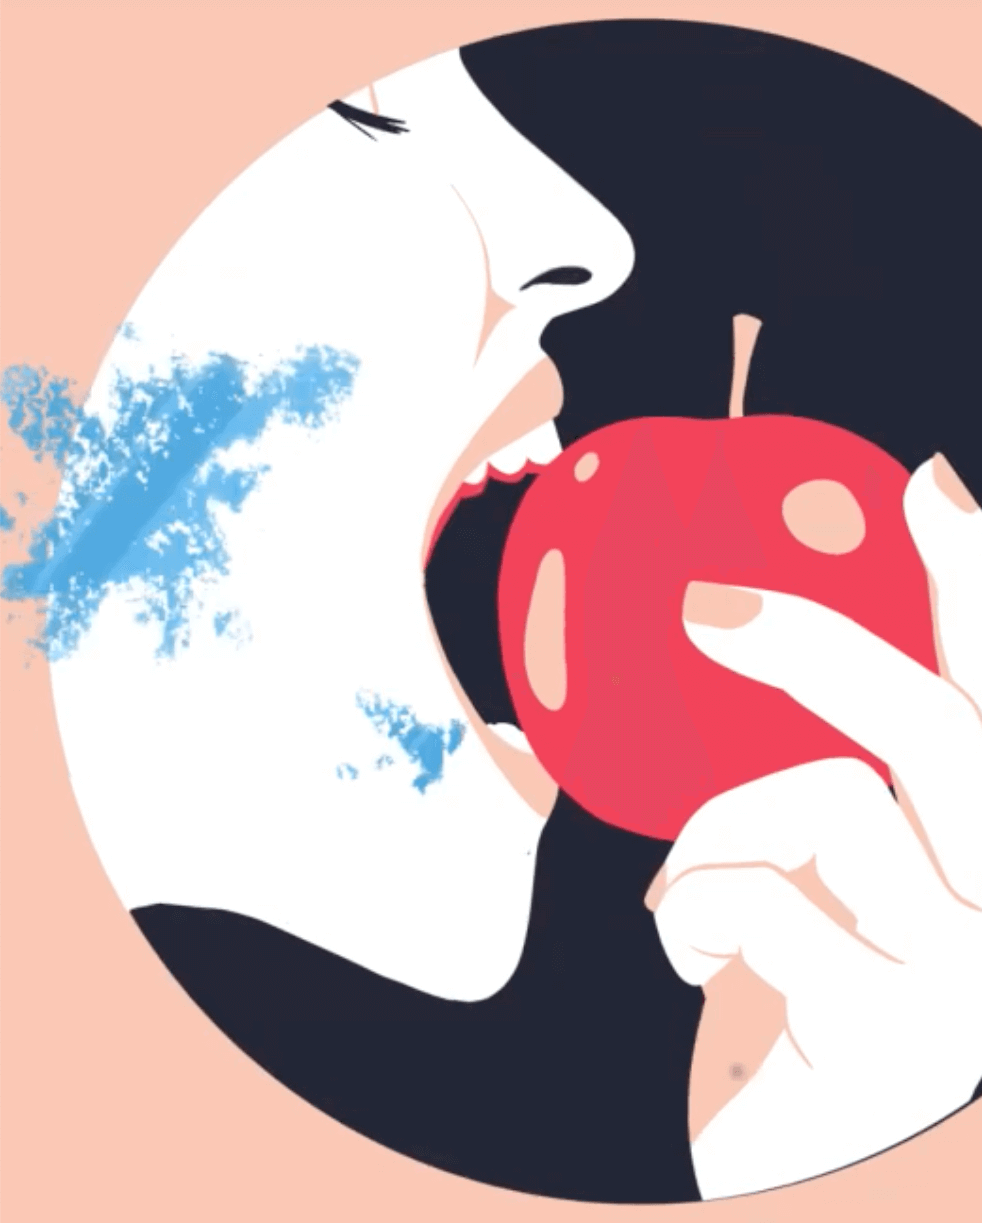 Illustration aus einem Erklärvideo von einer Person, die in einen roten Apfel beisst.